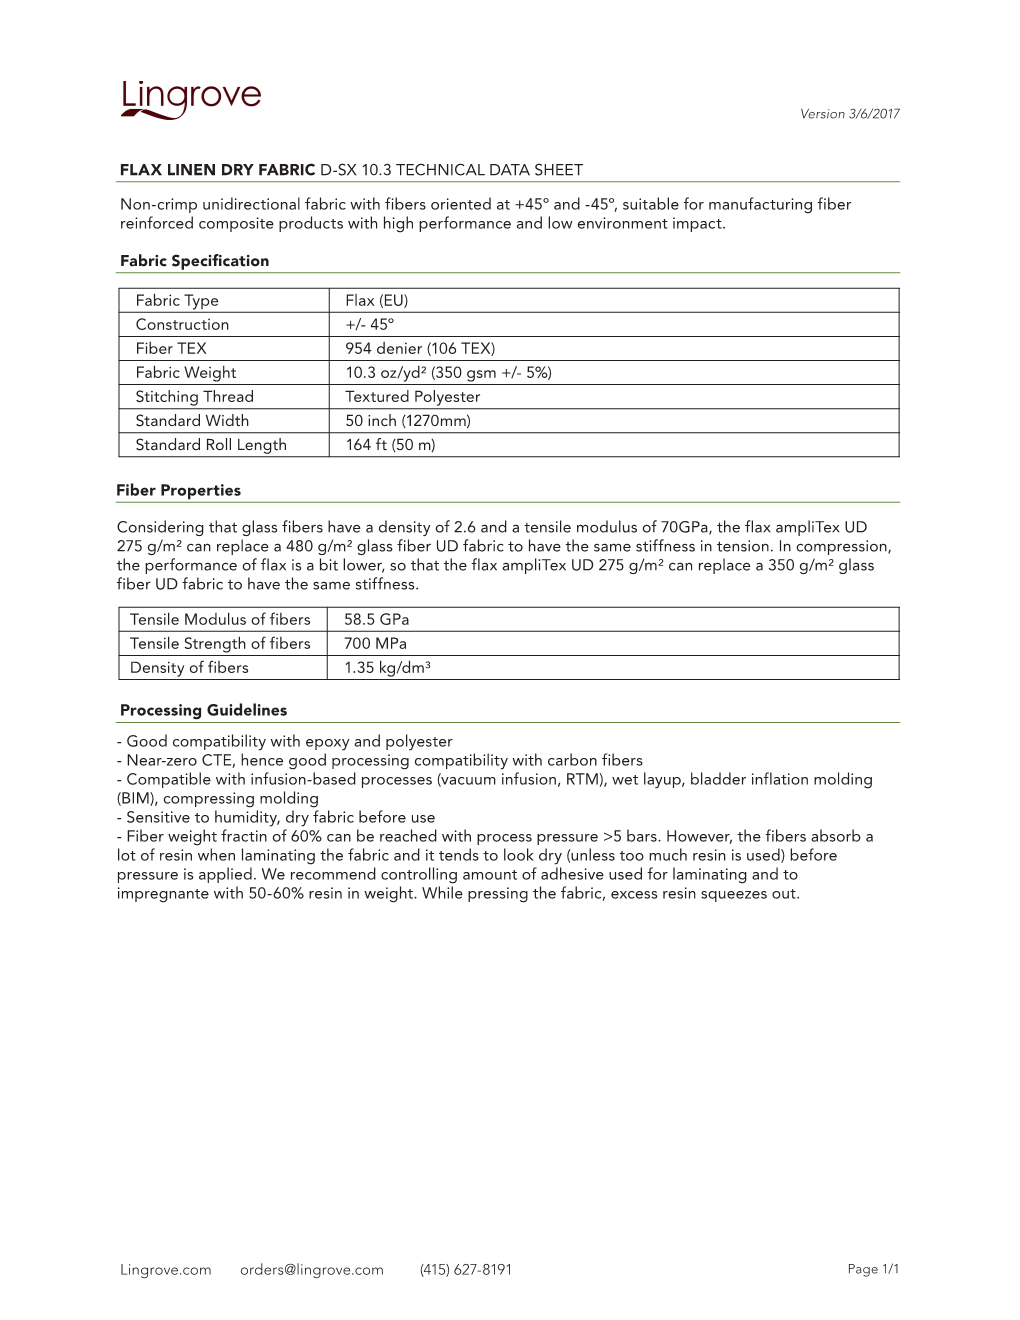 Flax Linen Dry Fabric D-Sx 10.3 Technical Data Sheet